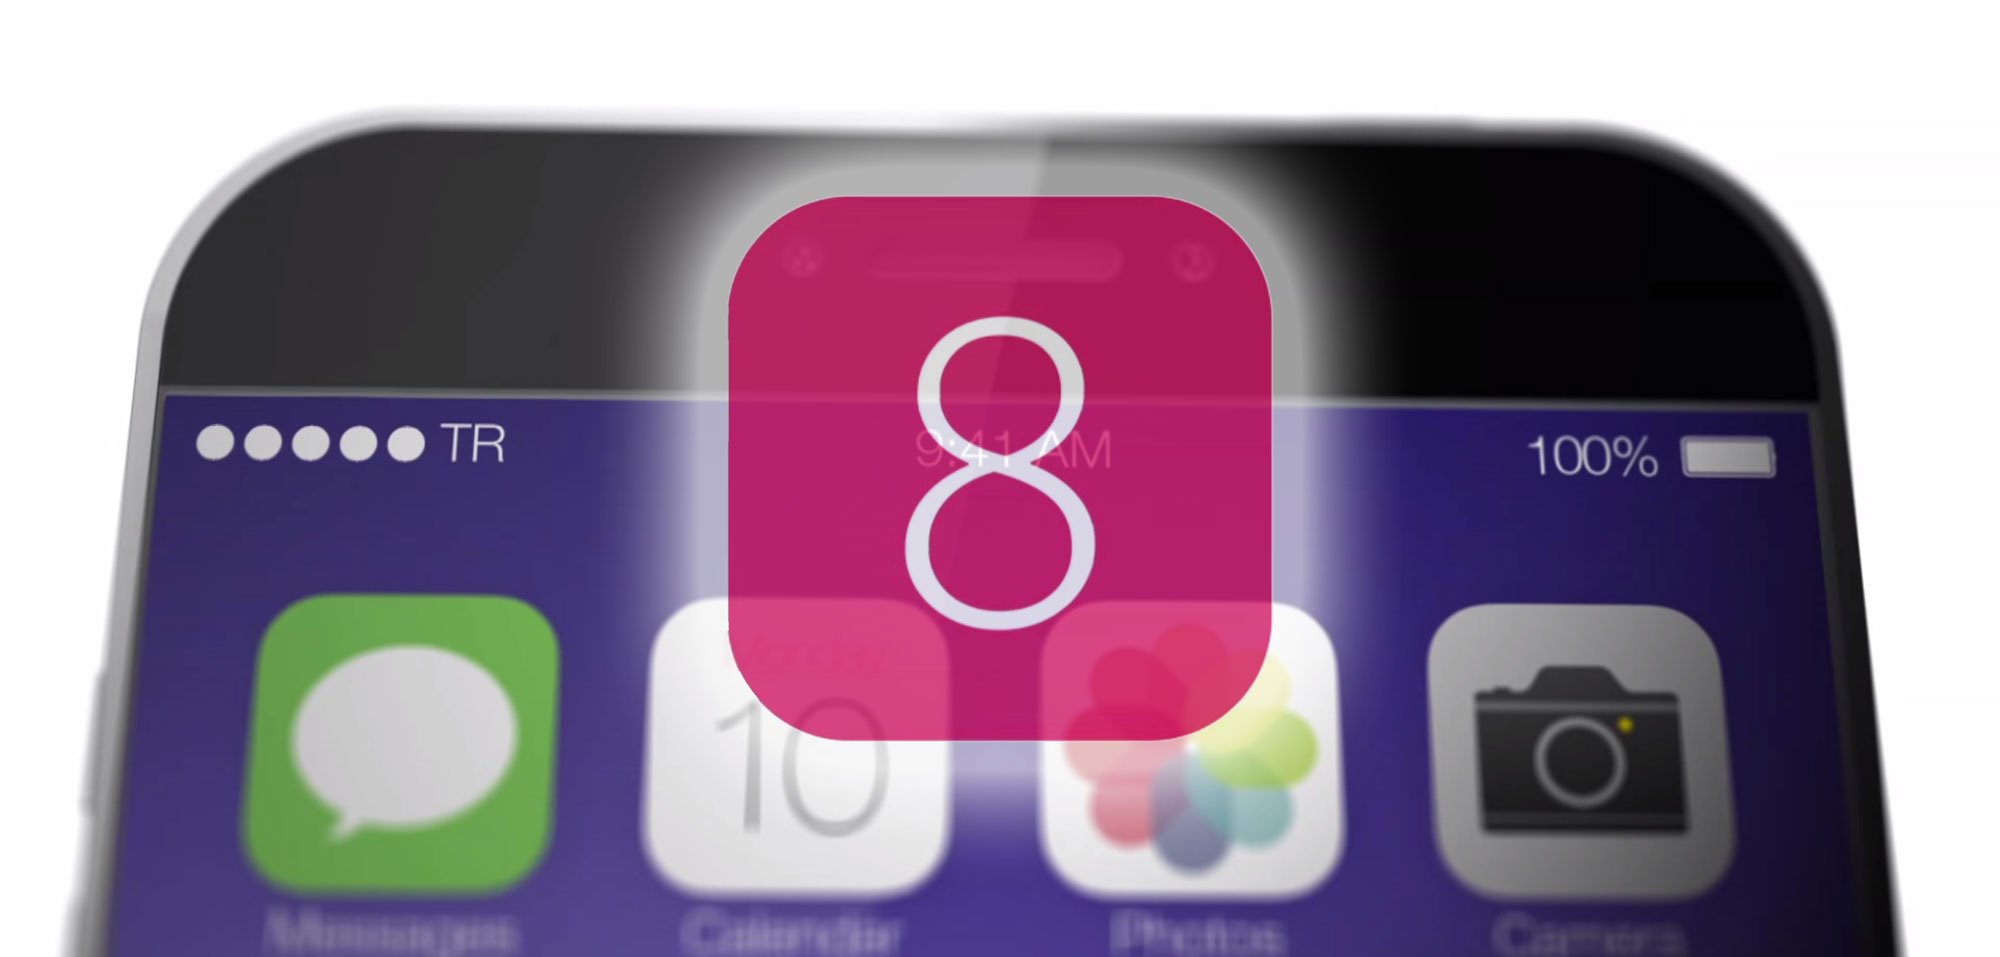 iOS 8: Neue Funktionen erst mit iOS 8.1 statt iOS 8? 9